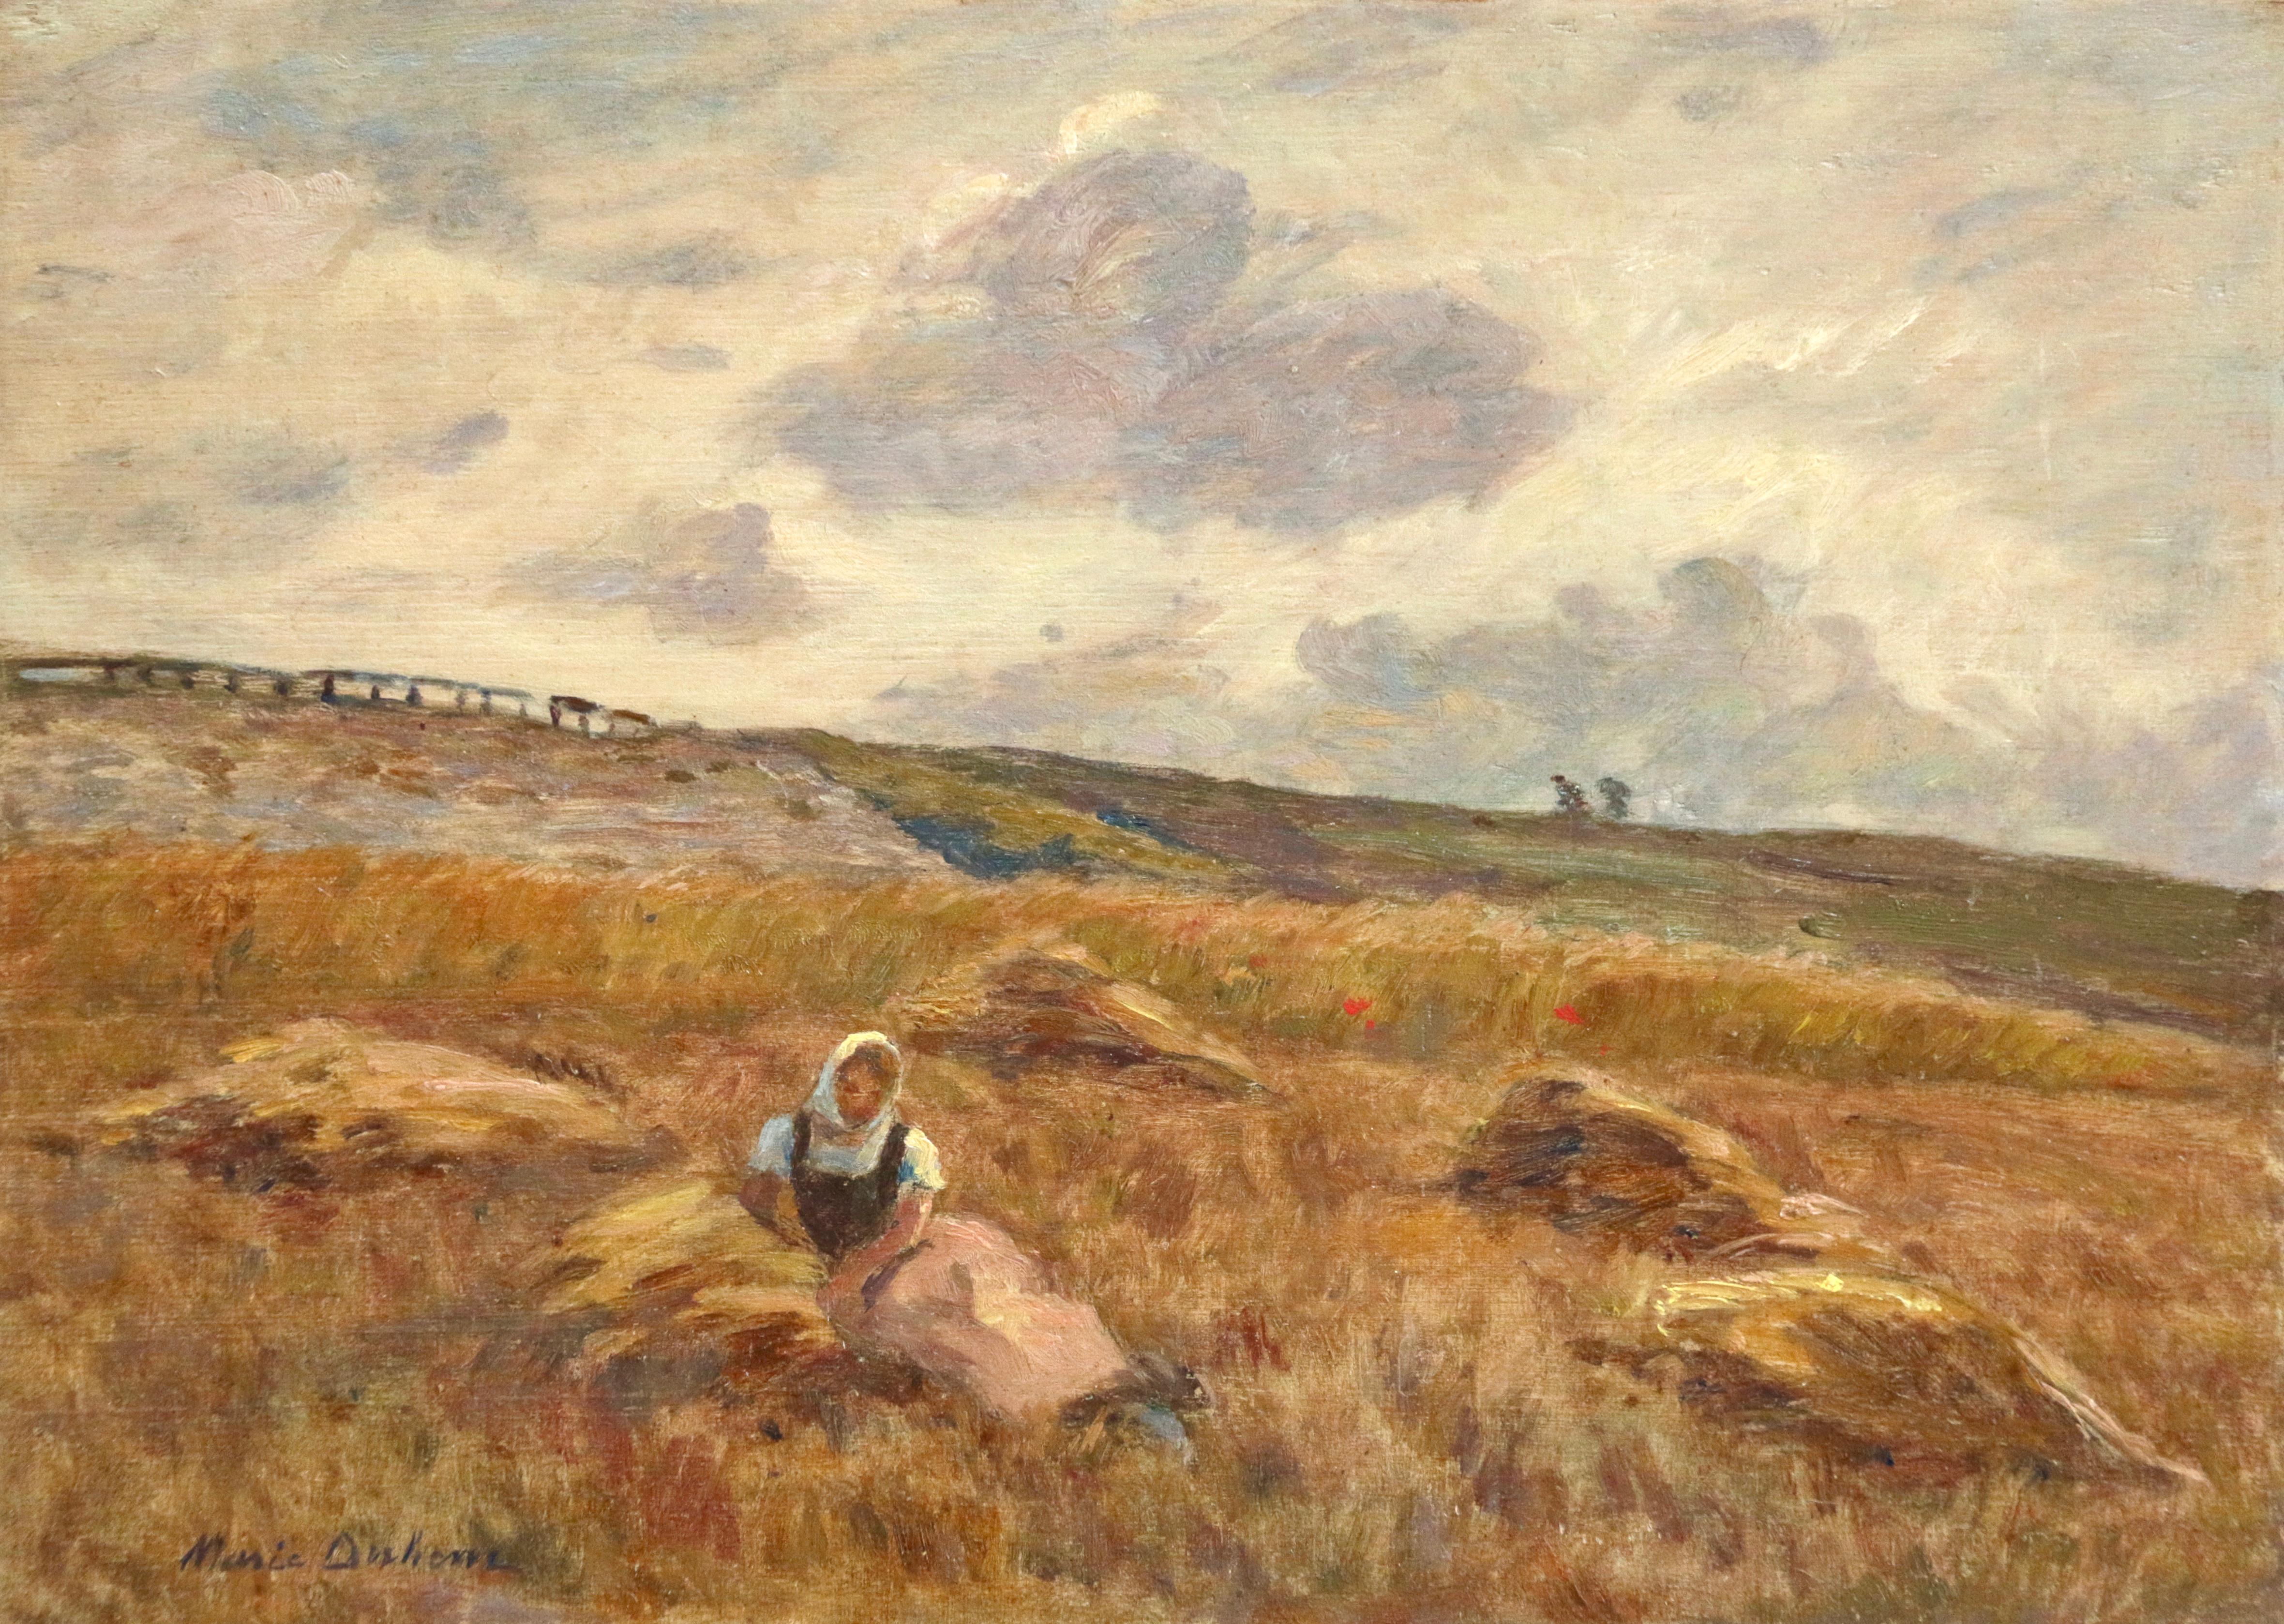 Marie Duhem Landscape Painting - Jeune Femme au Repos - 19th Century Oil, Woman Resting in Landscape by M Duhem